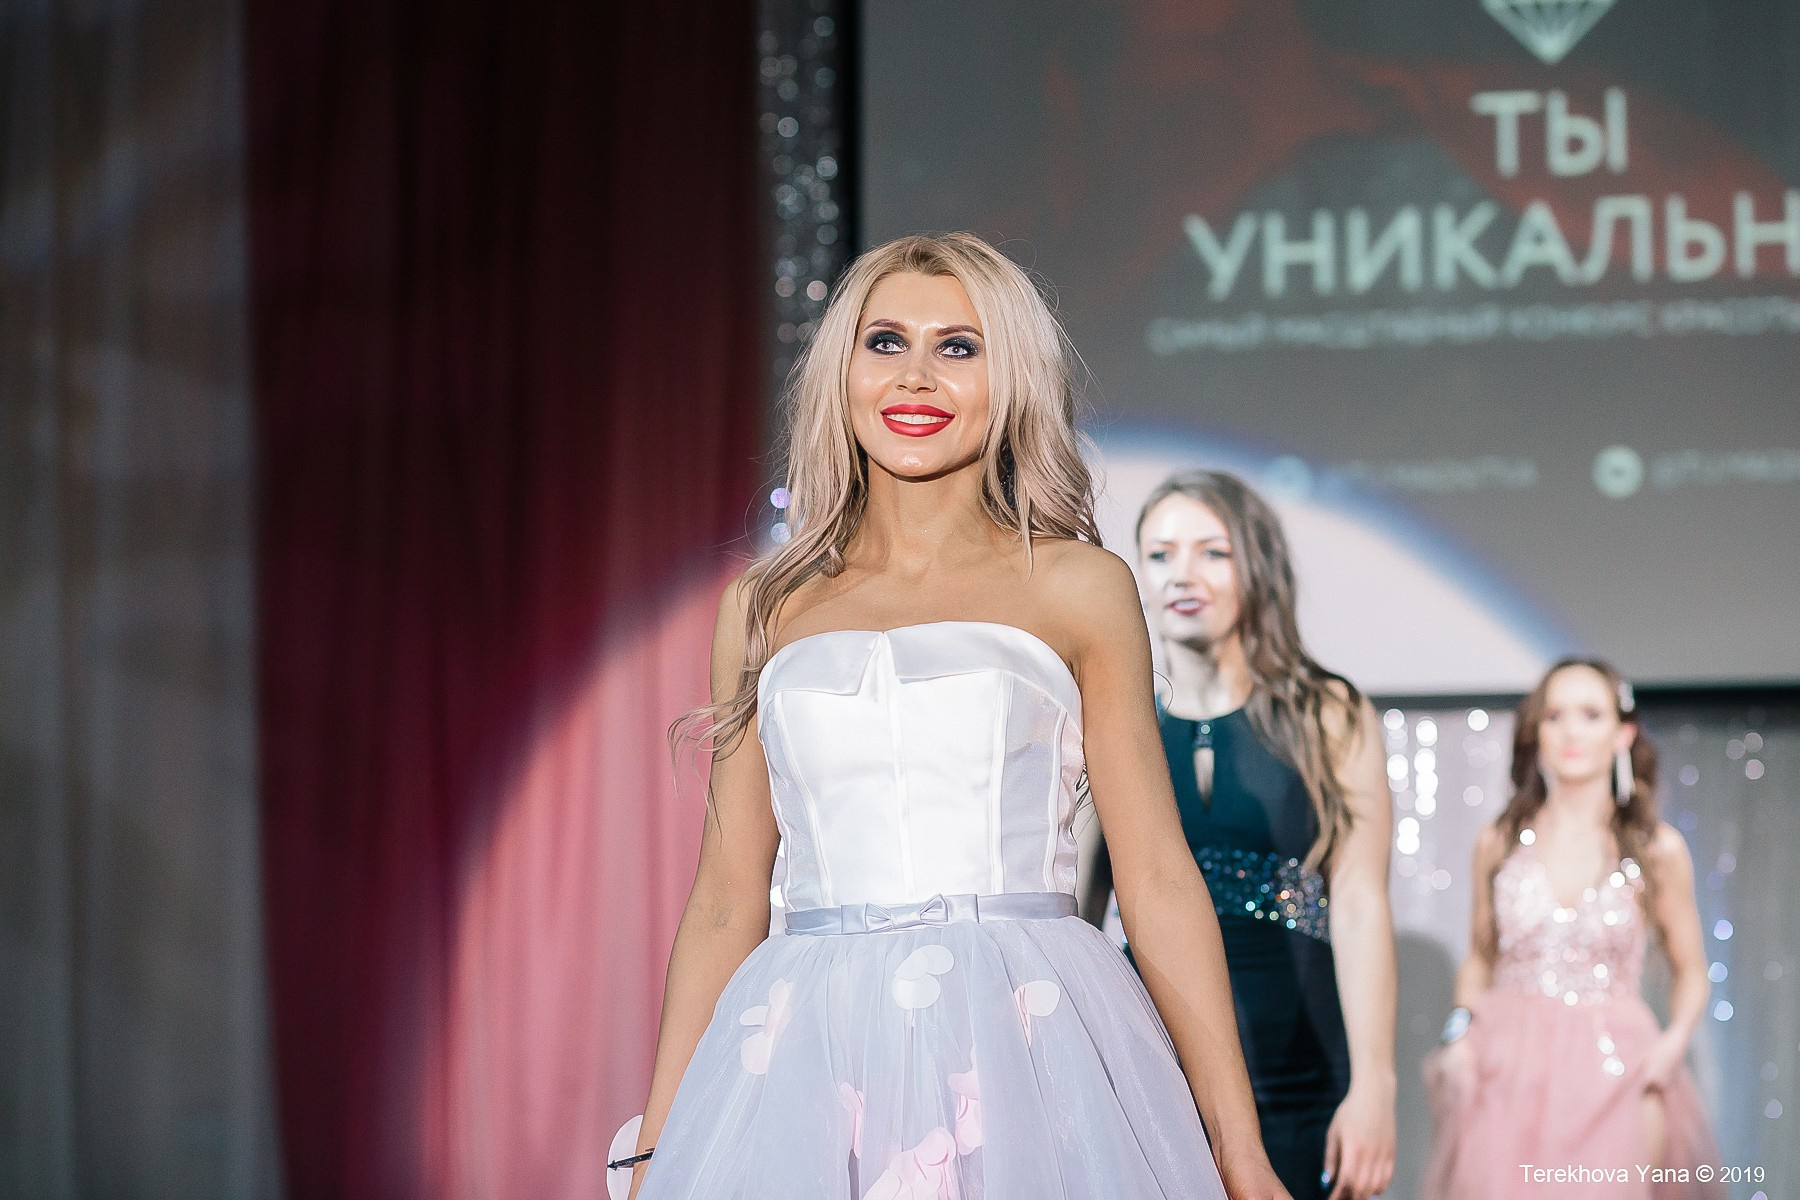 Травля Оксаны в соцсетях началась спустя неделю после финала конкурса красоты